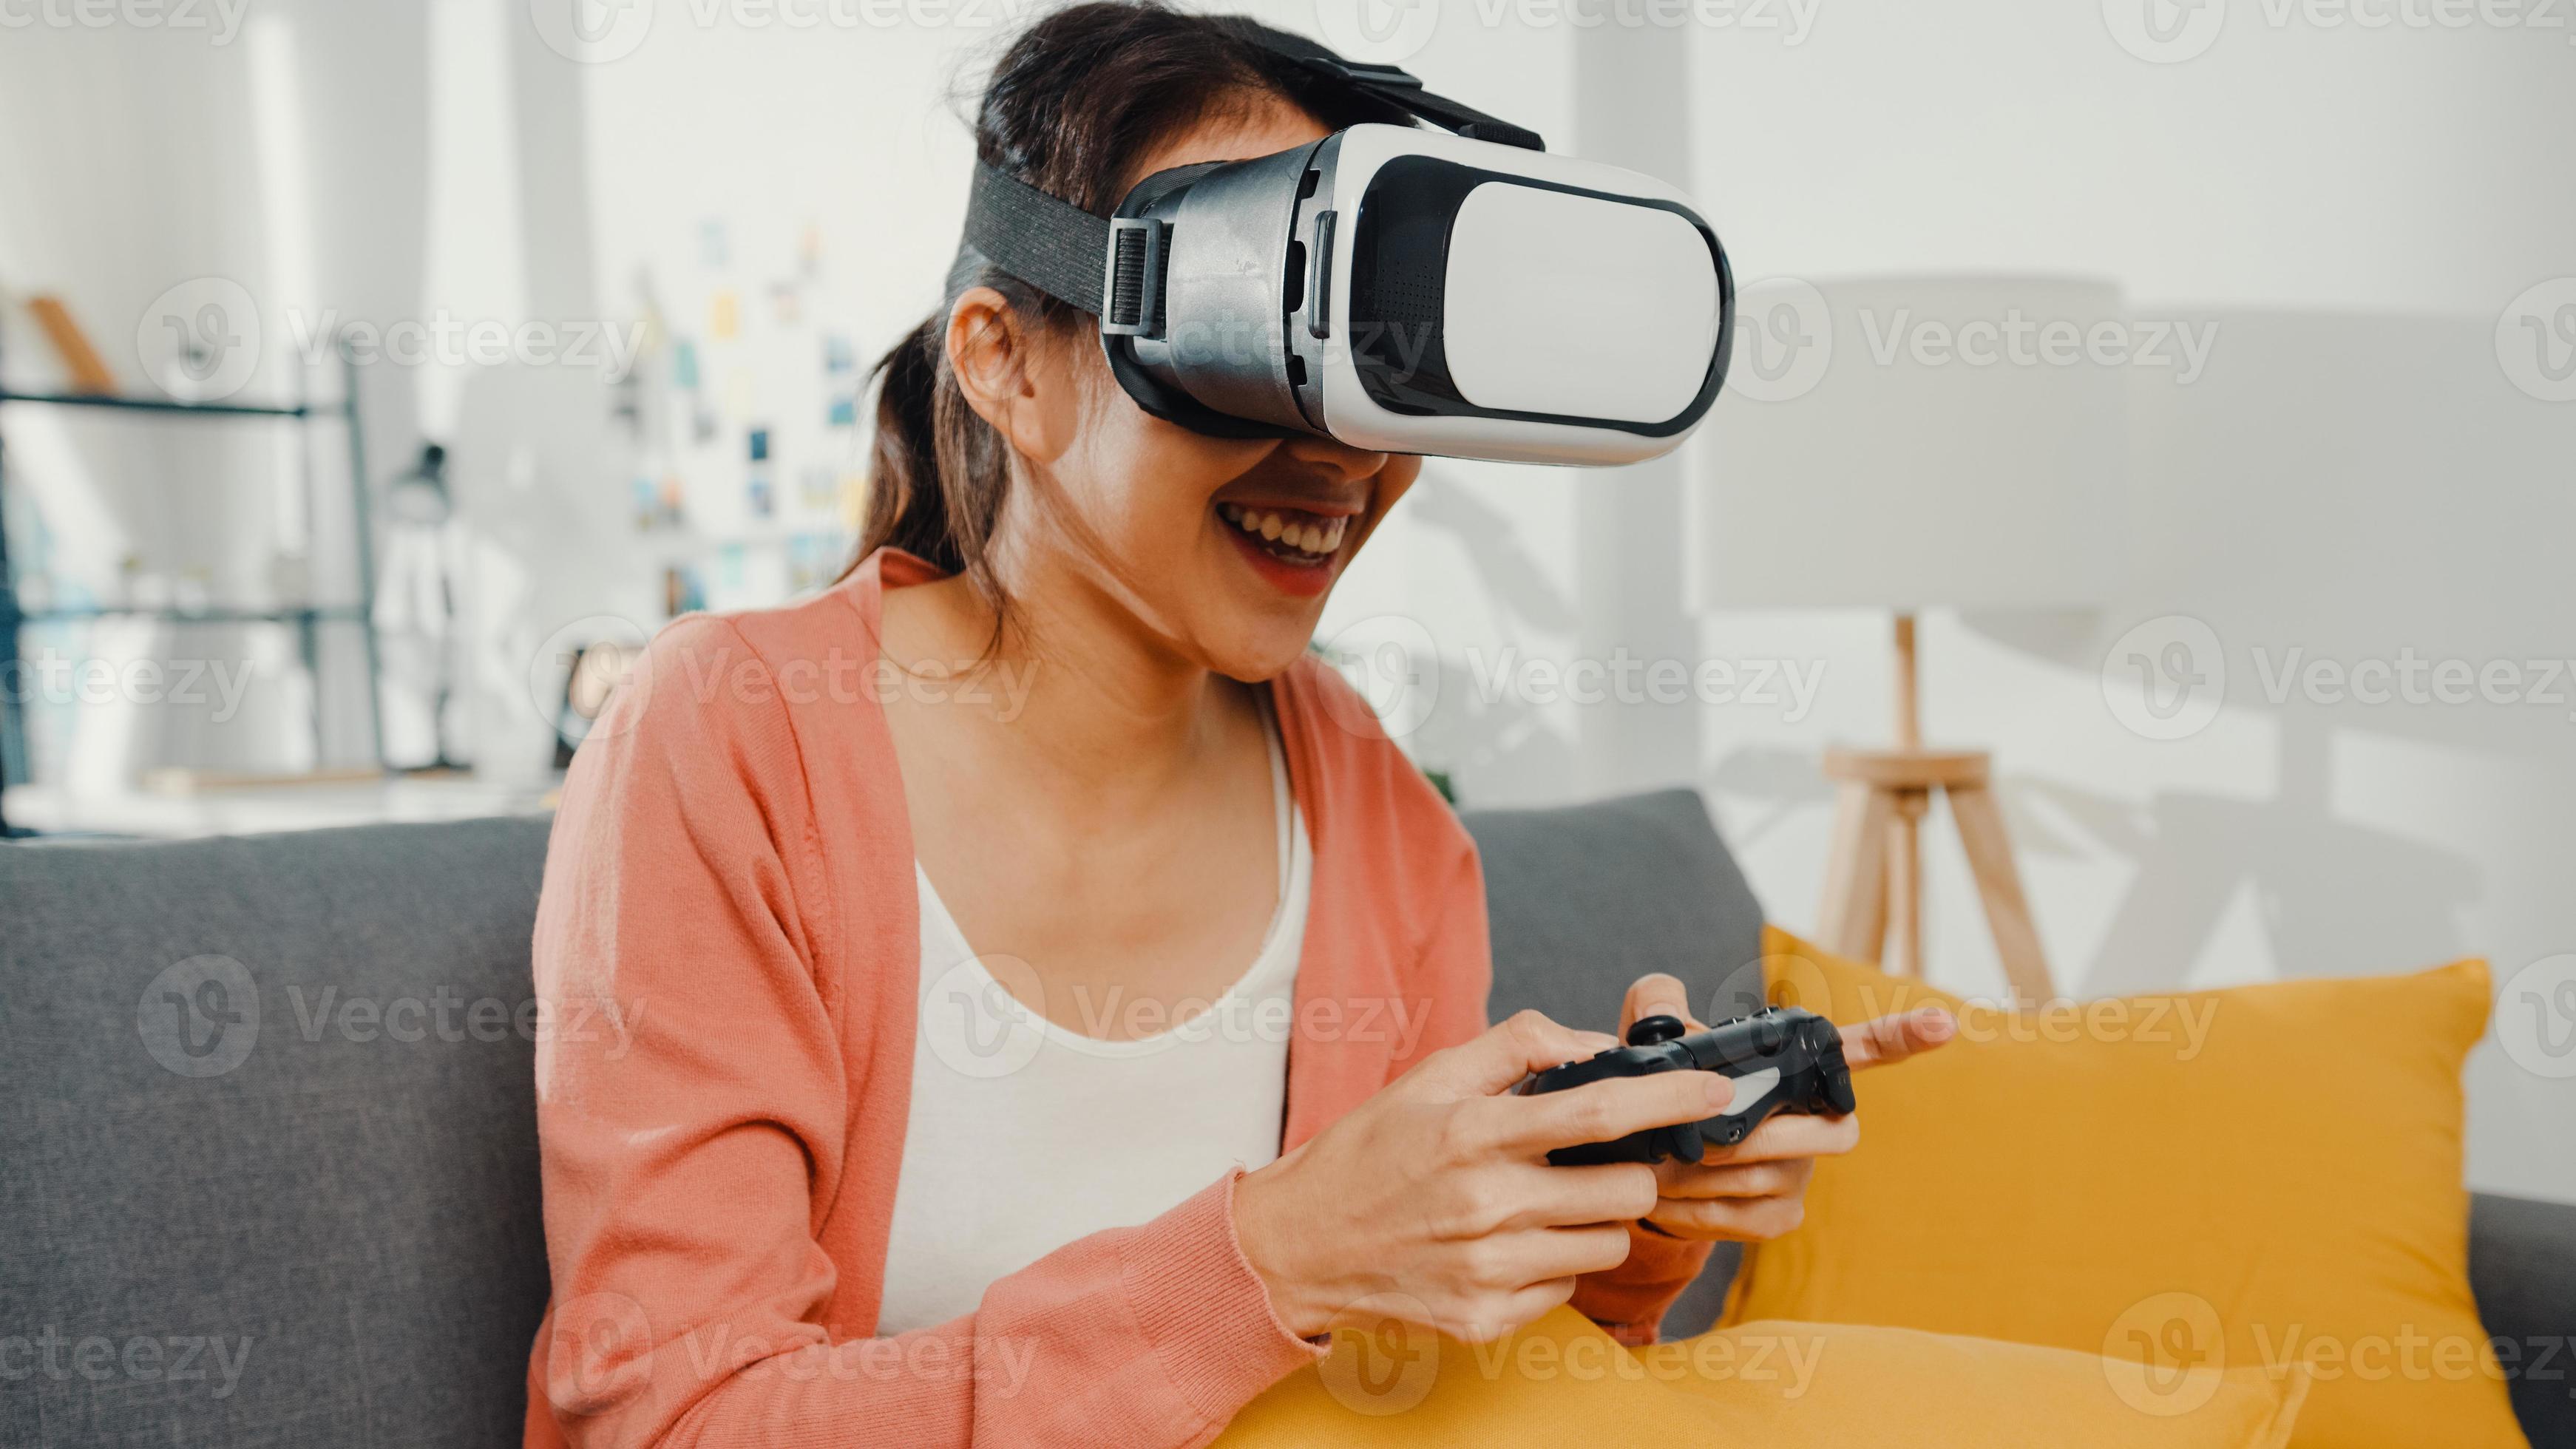 la signora asiatica indossa gli occhiali delle cuffie della realtà virtuale gioca al gioco del joystick sul divano nel soggiorno di casa. resta a casa quarantena covid, re-immagina la realtà, vr a casa, tecnologia vr del concetto futuro. foto